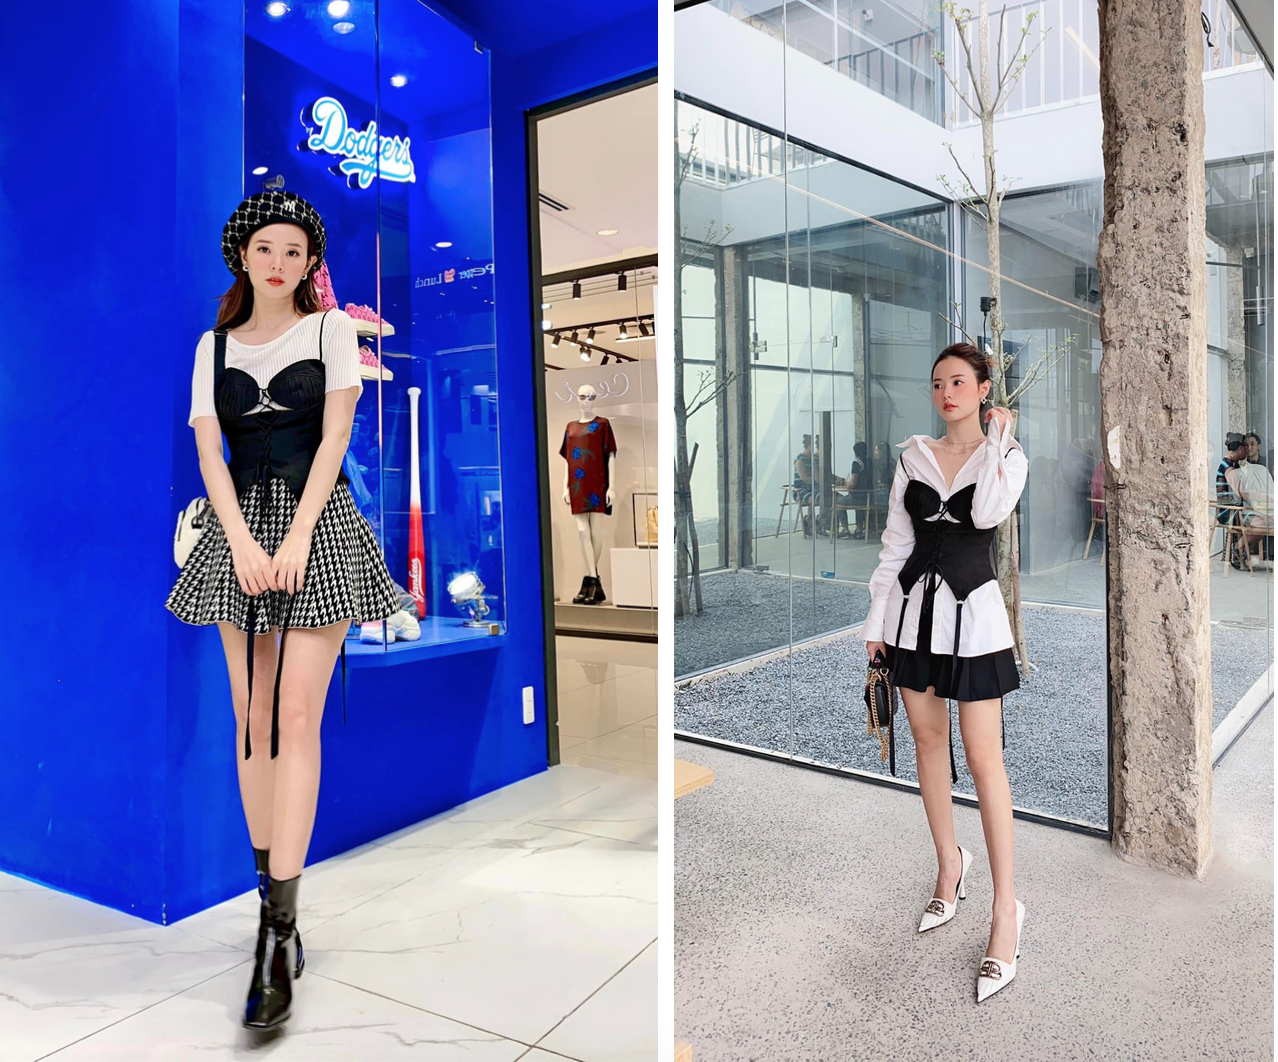 Midu thời thượng với 2 outfit khác nhau dùng chung một chiếc corset. Để mặc lại đồ cũ mà lúc nào nhìn cũng mới, item bạn lựa chọn nên có sự trung tính, có khả năng mix&match đa dạng hơn.